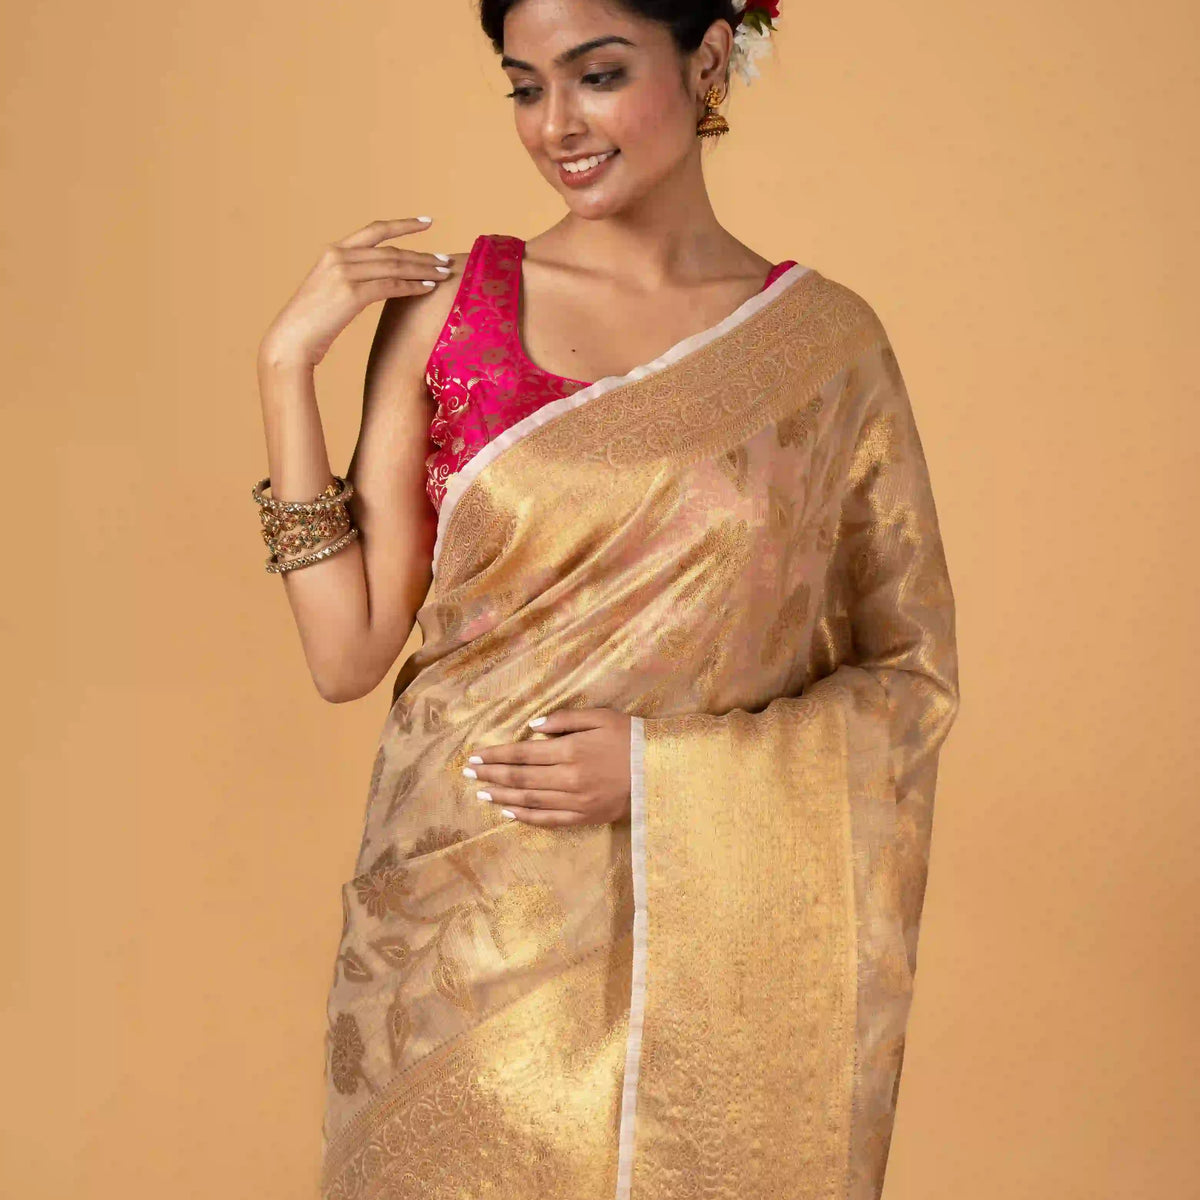 Contour & Conceal (Saree)  Jute sarees, Saree, Blouse piece